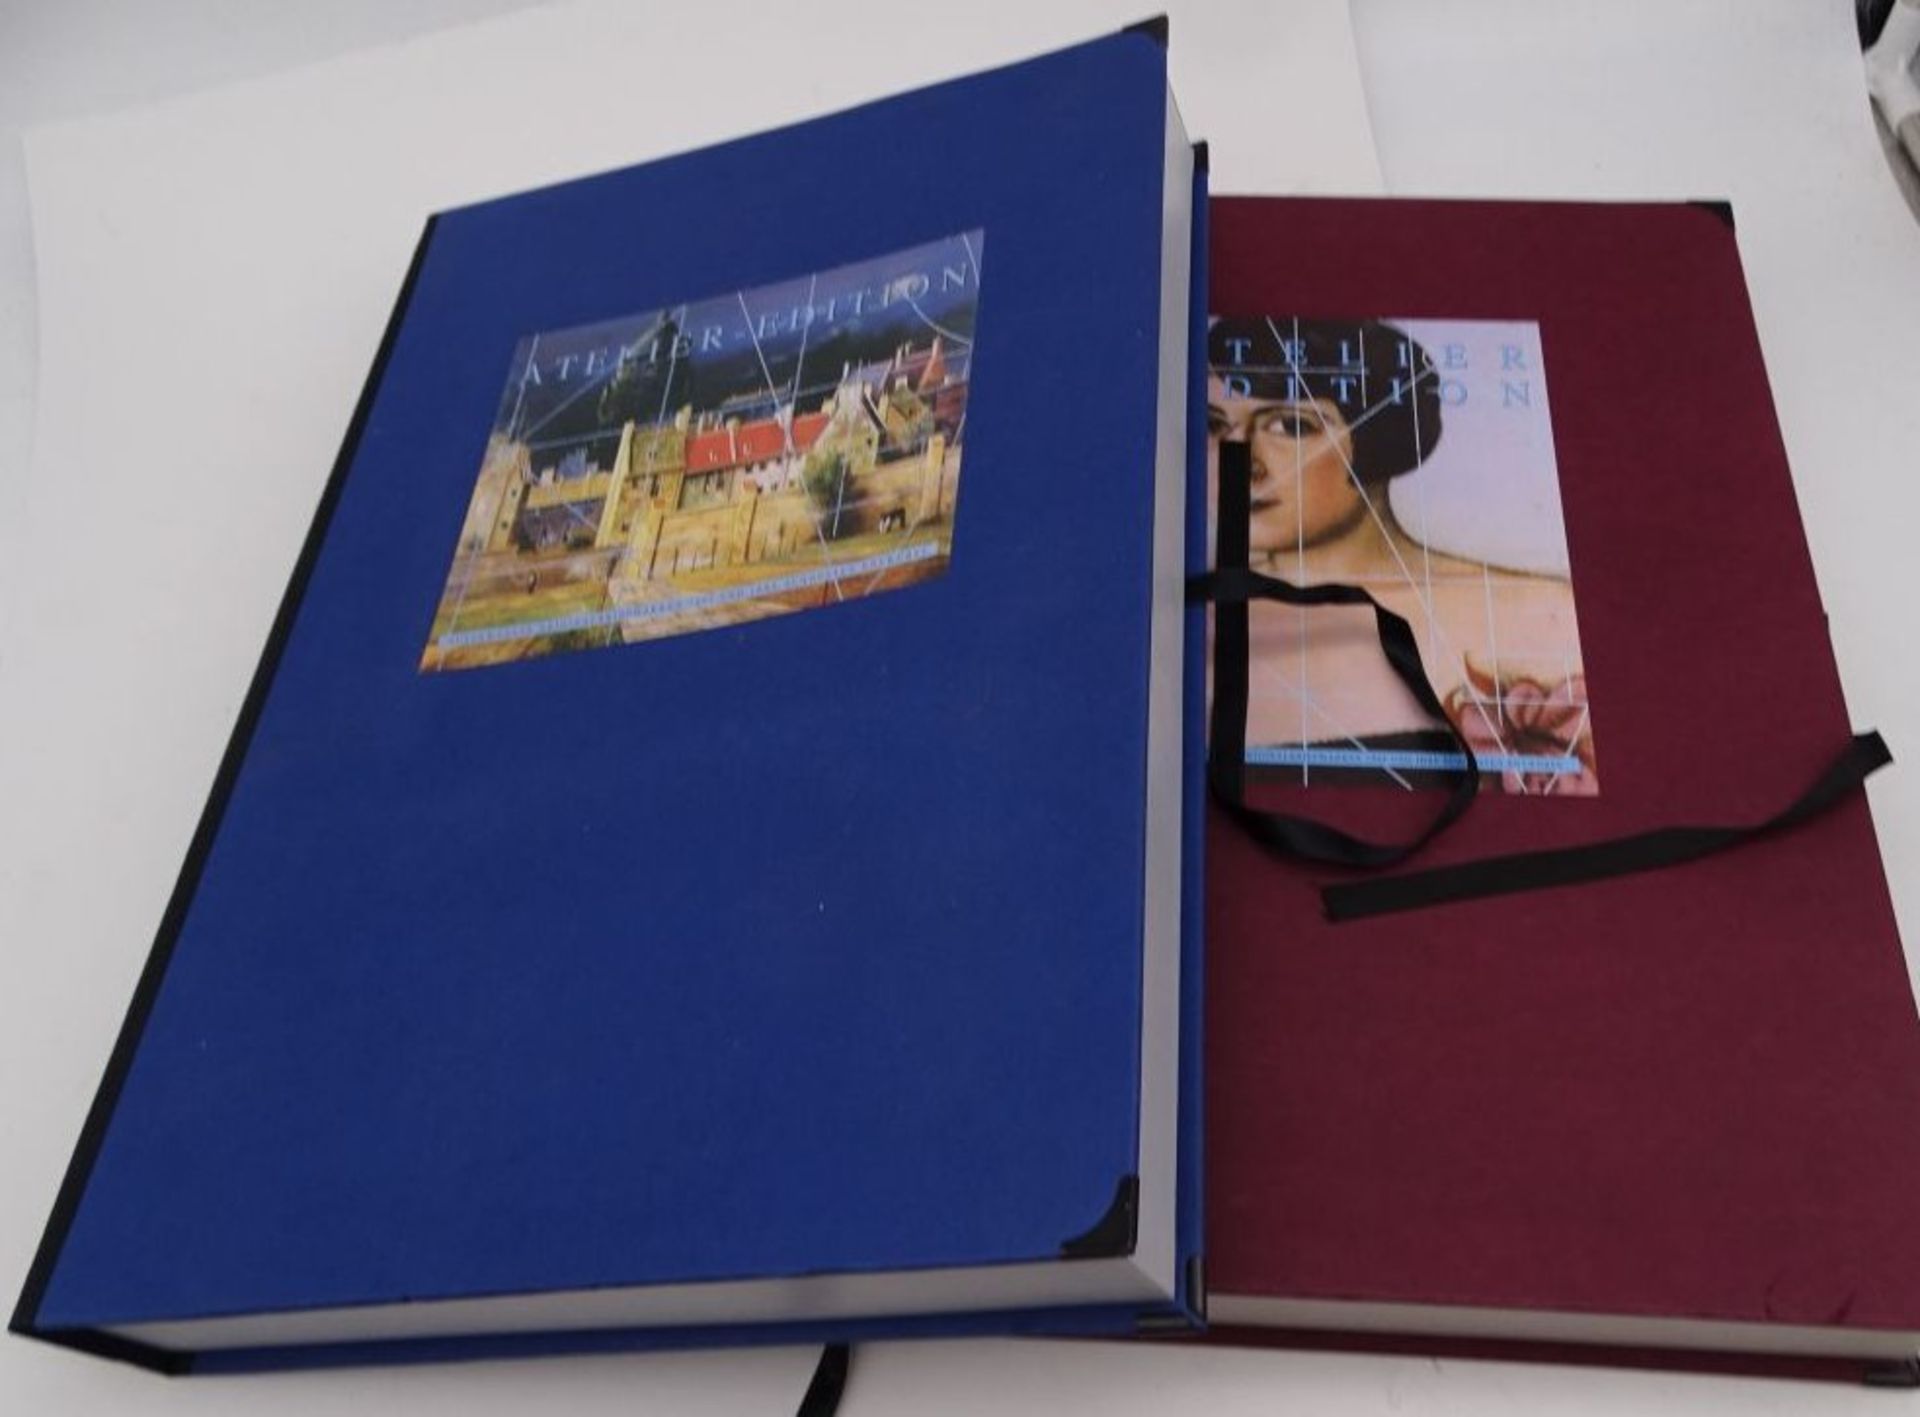 2 Grossbände Briefmarken Bund Atelier-Edition, 1995 und 1994,komplett. limitierte Auflagen - Bild 2 aus 11